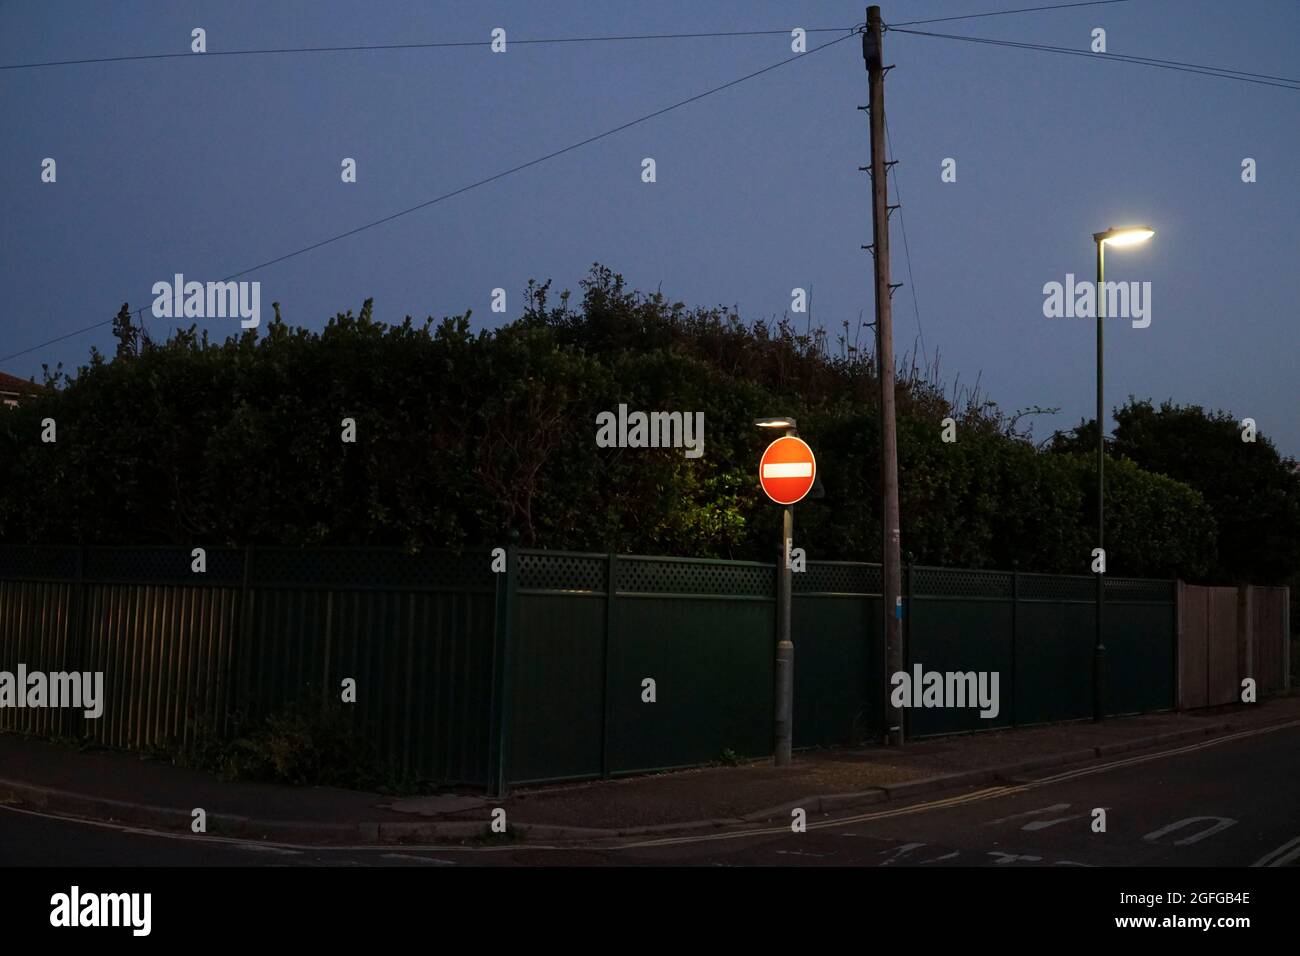 East Wittering, Großbritannien, 25. August 2021: In der Abenddämmerung ragt ein beleuchtetes No Entry-Schild scharf gegen eine hohe Hecke an einer Vorstadtstraße heraus. Stockfoto